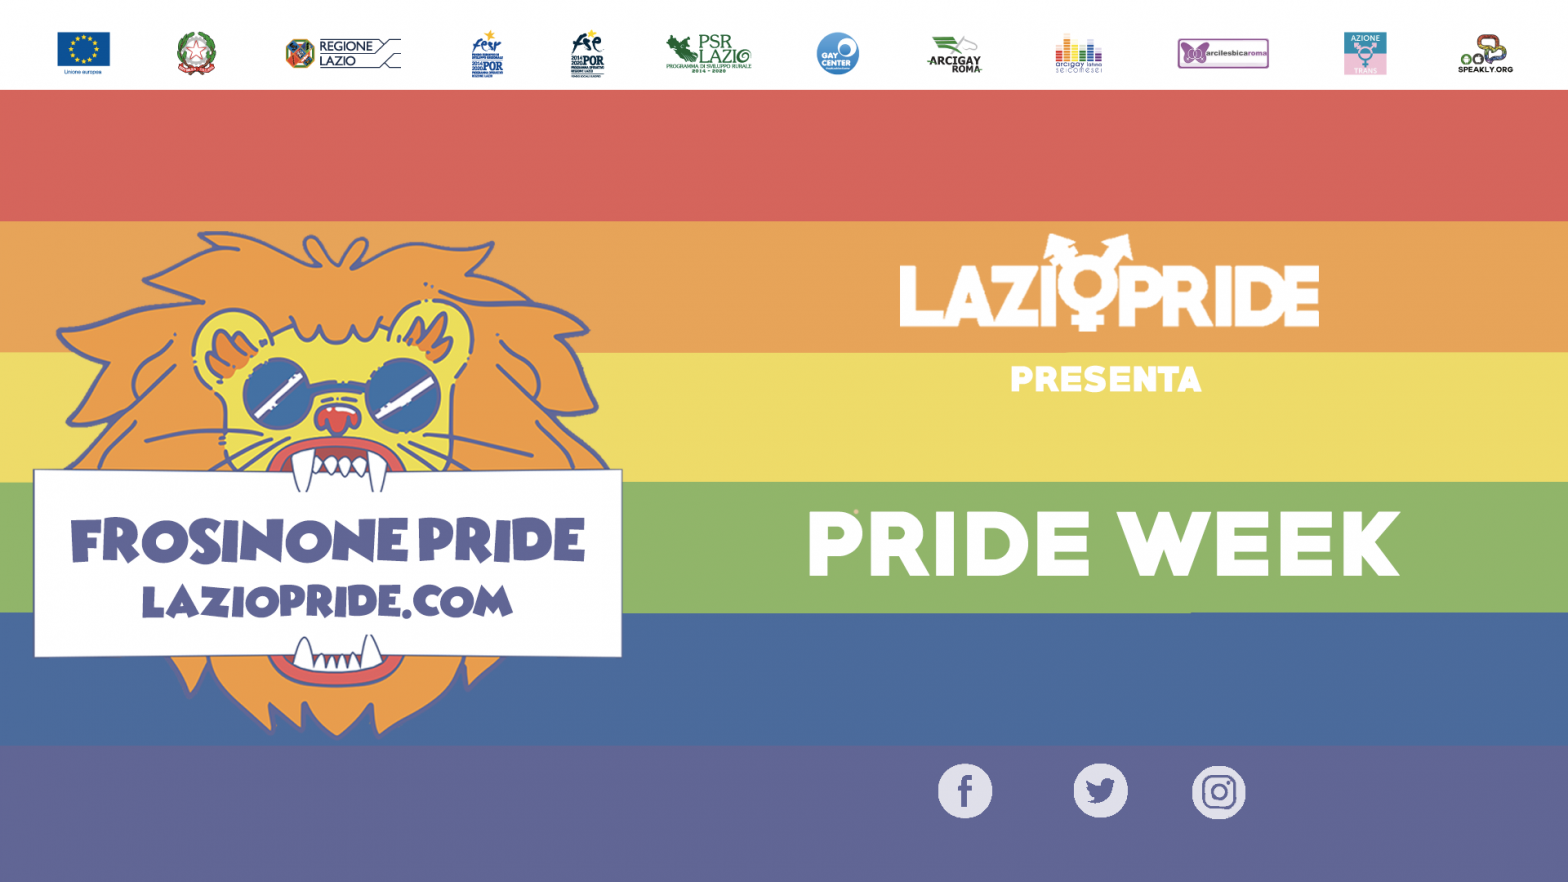 Lazio Pride: al via la Pride Week. Giovedì la presentazione della legge regionale contro l’omotransfobia